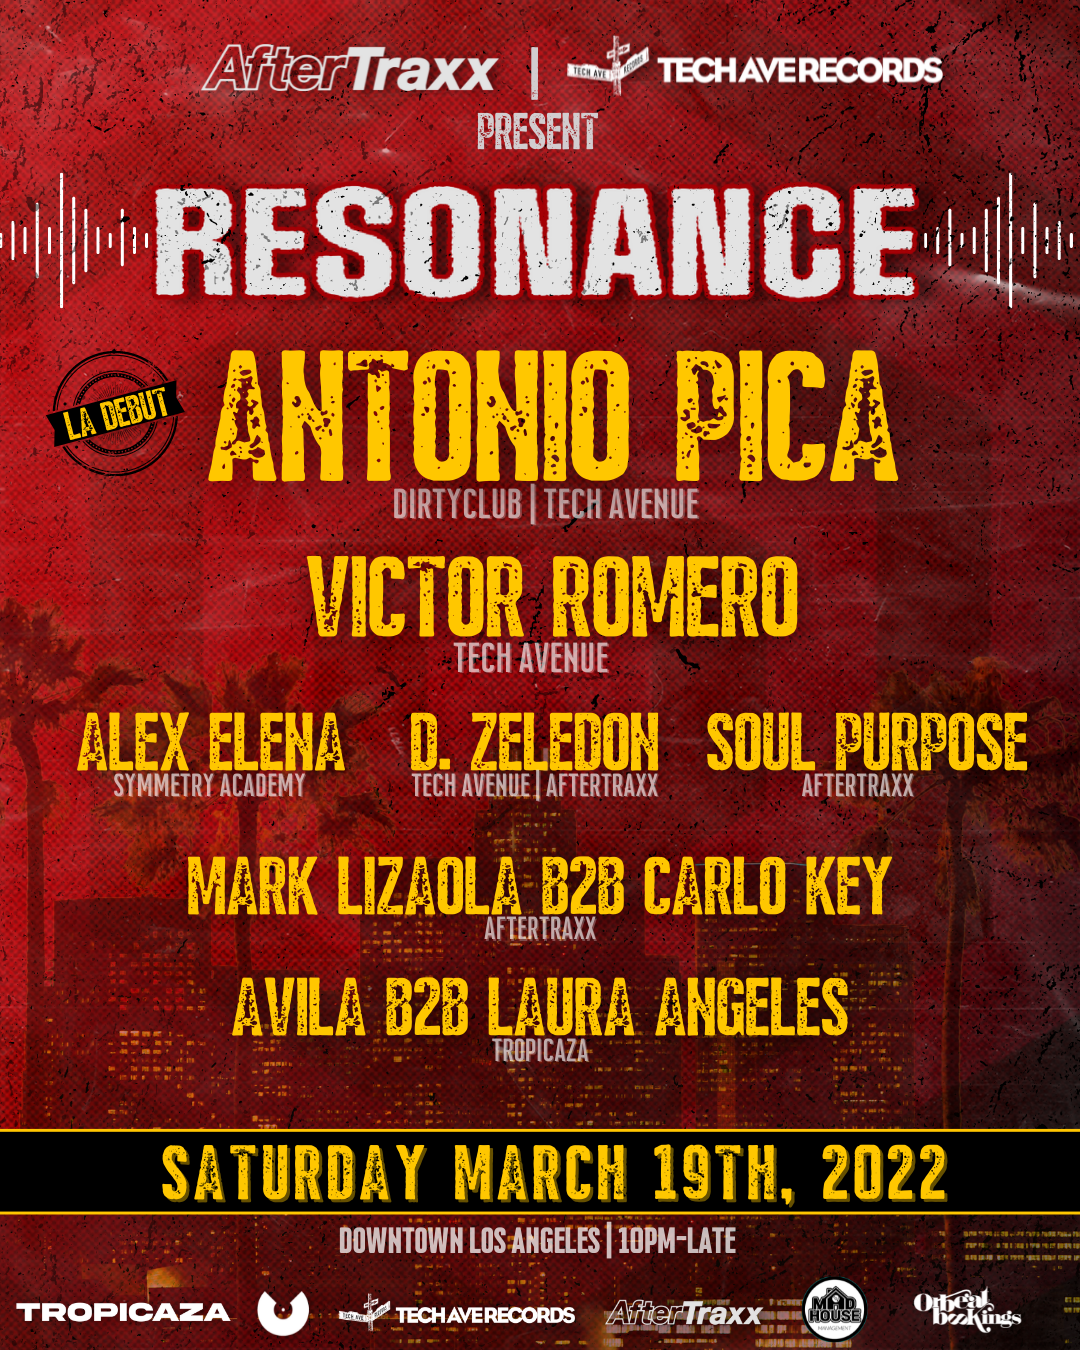 Resonance Los Angeles with Antonio Pica - Página frontal